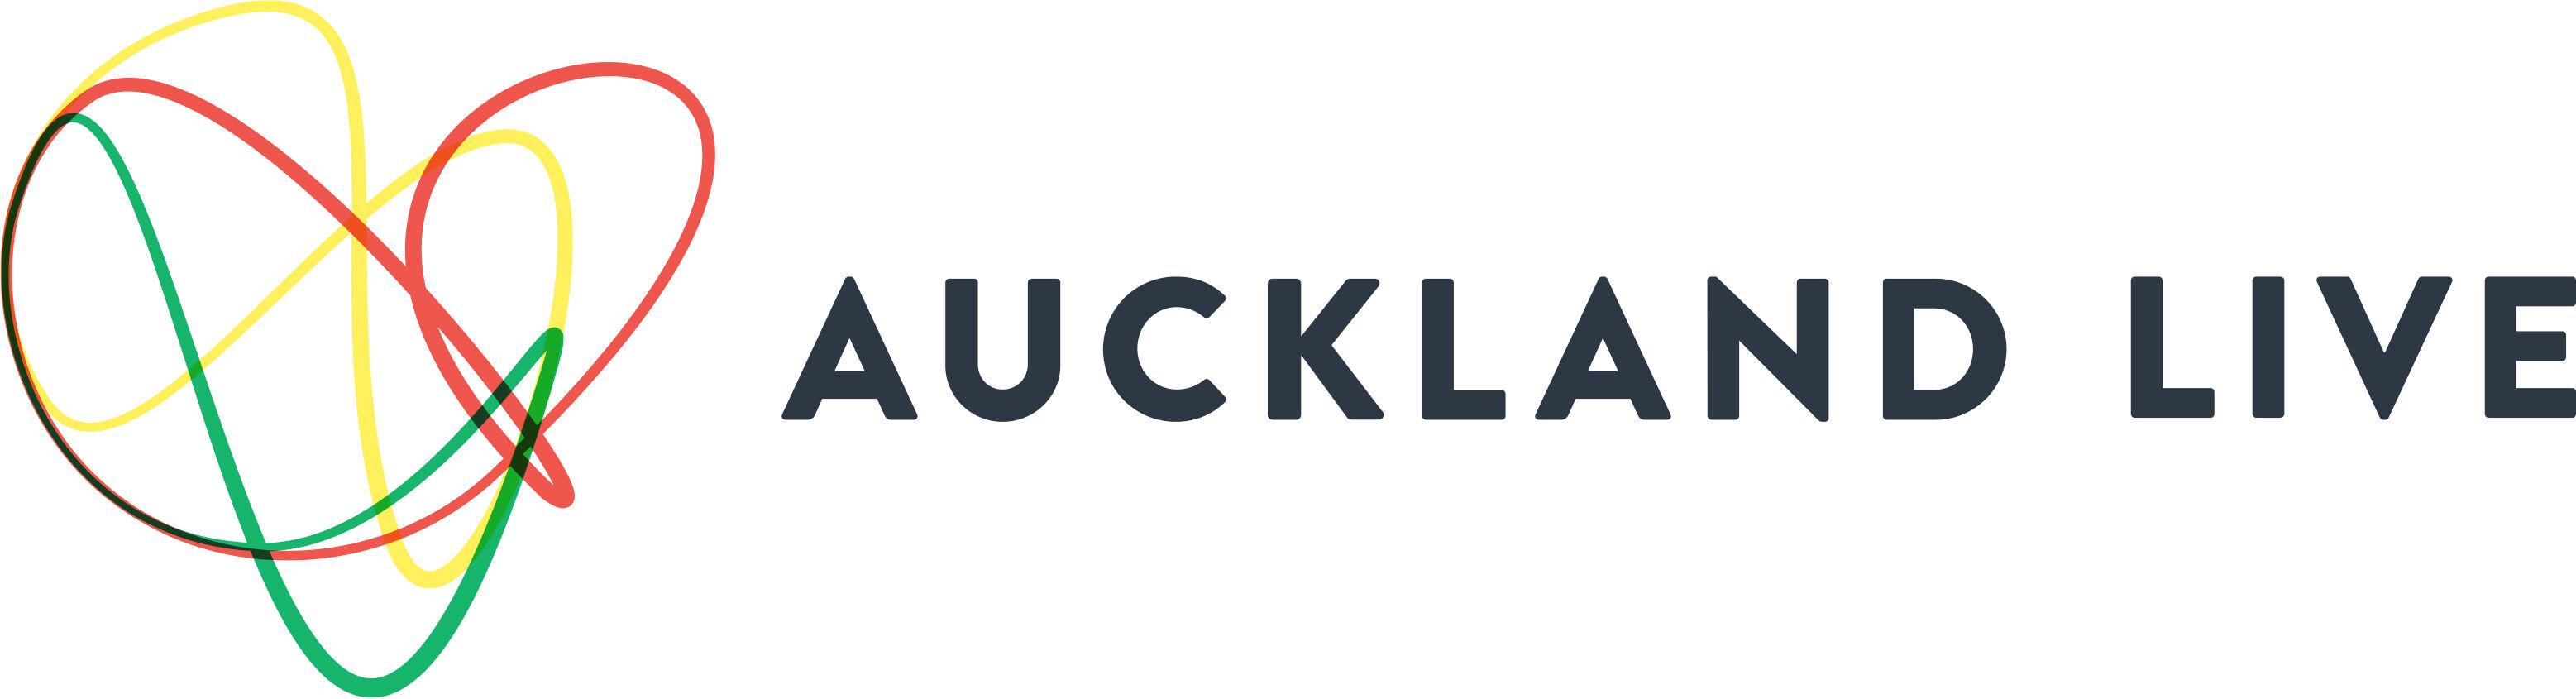 auckland-live logo